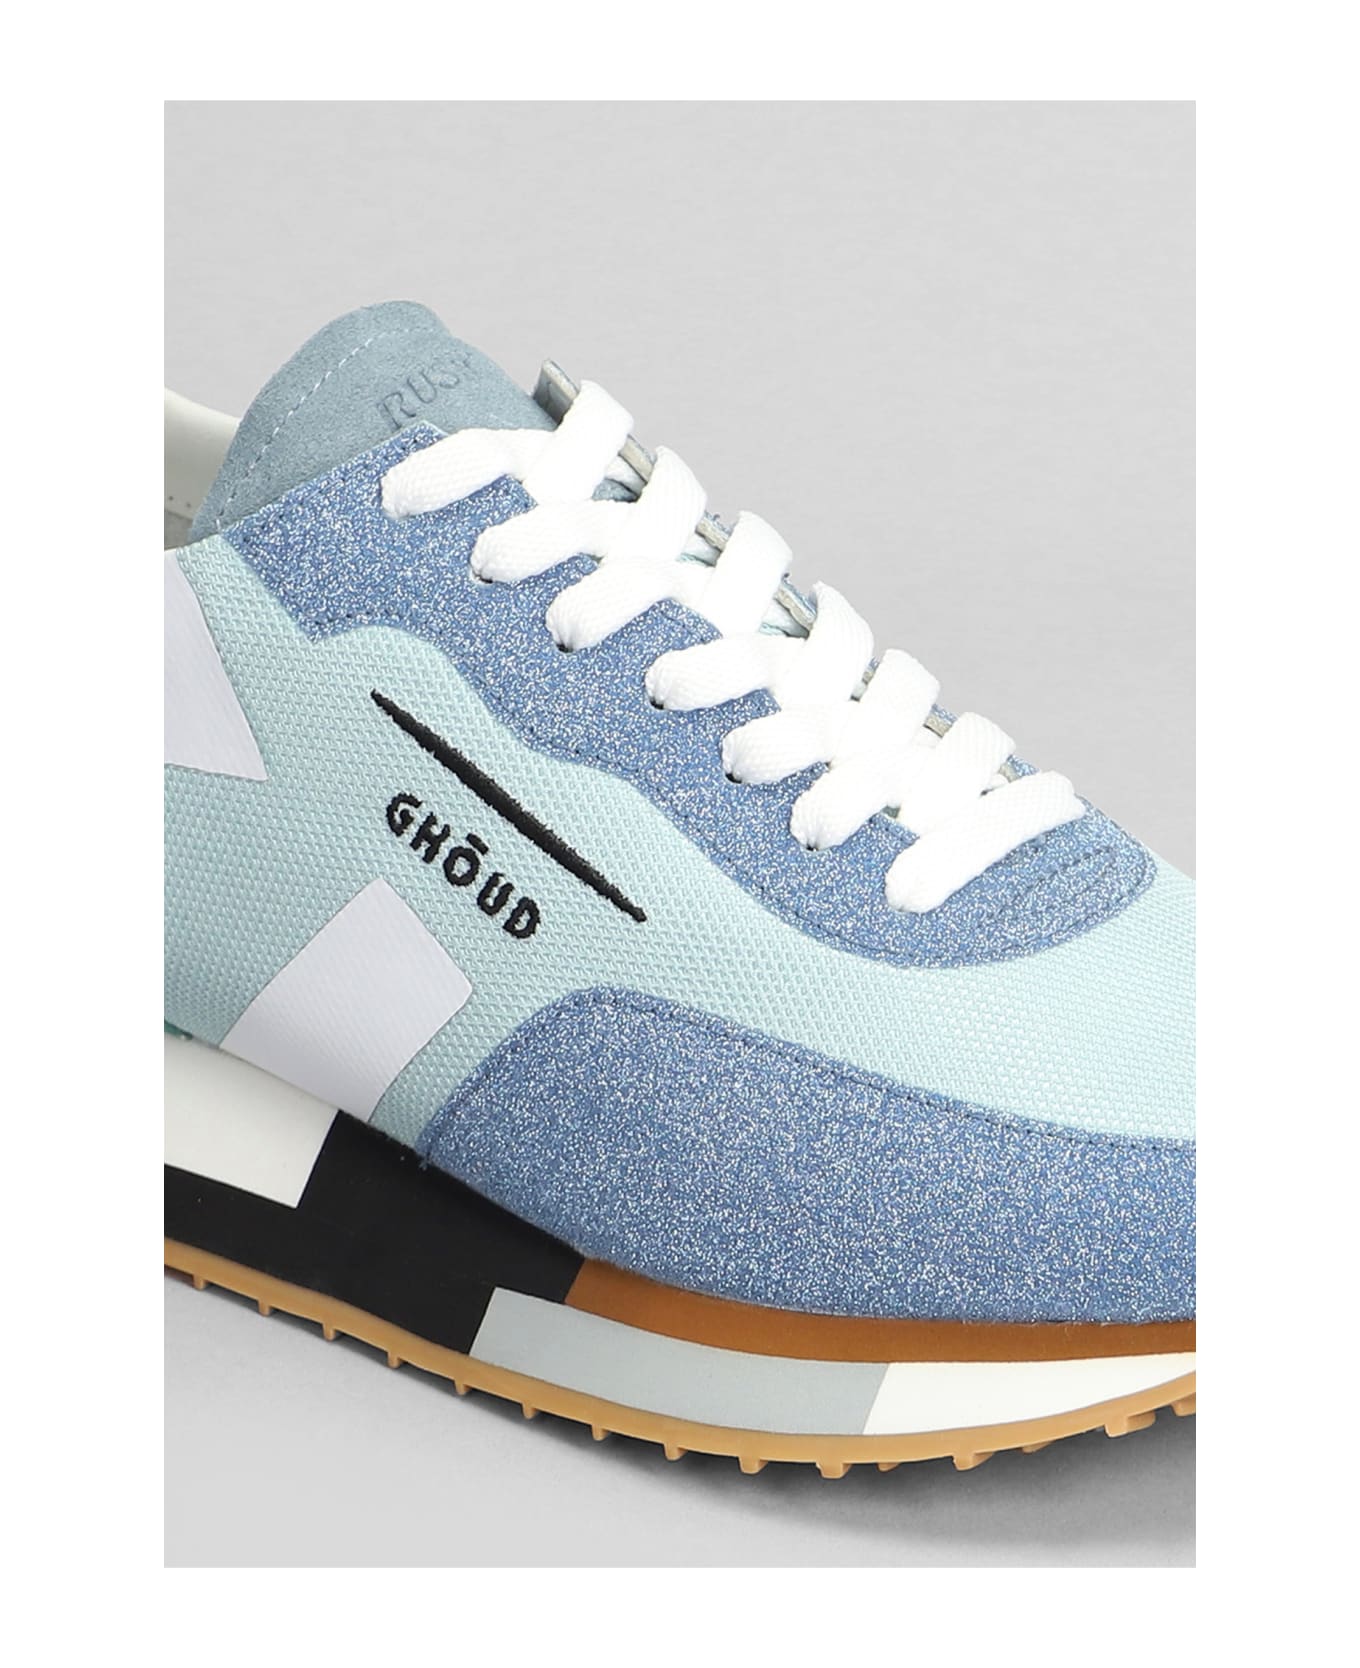 GHOUD Starlight Multi Sneakers In Blue Glitter - blue